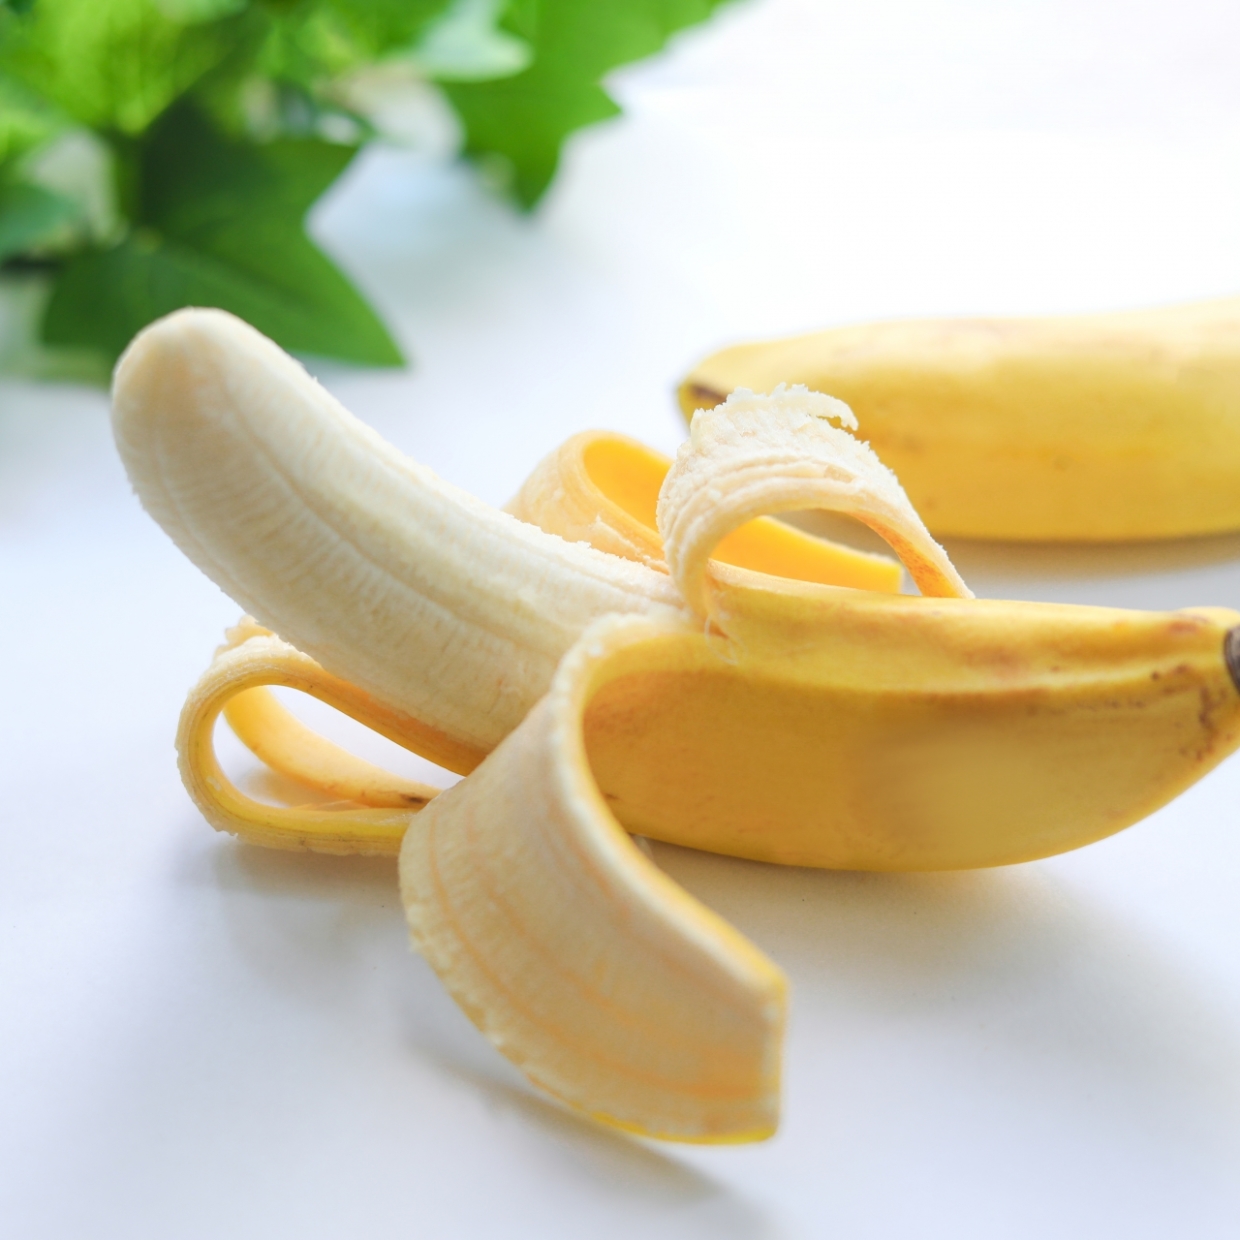  バナナは“青め”を選ぶのが正解だった。腸を整えるなら「両端が緑色のバナナ」がいい理由 